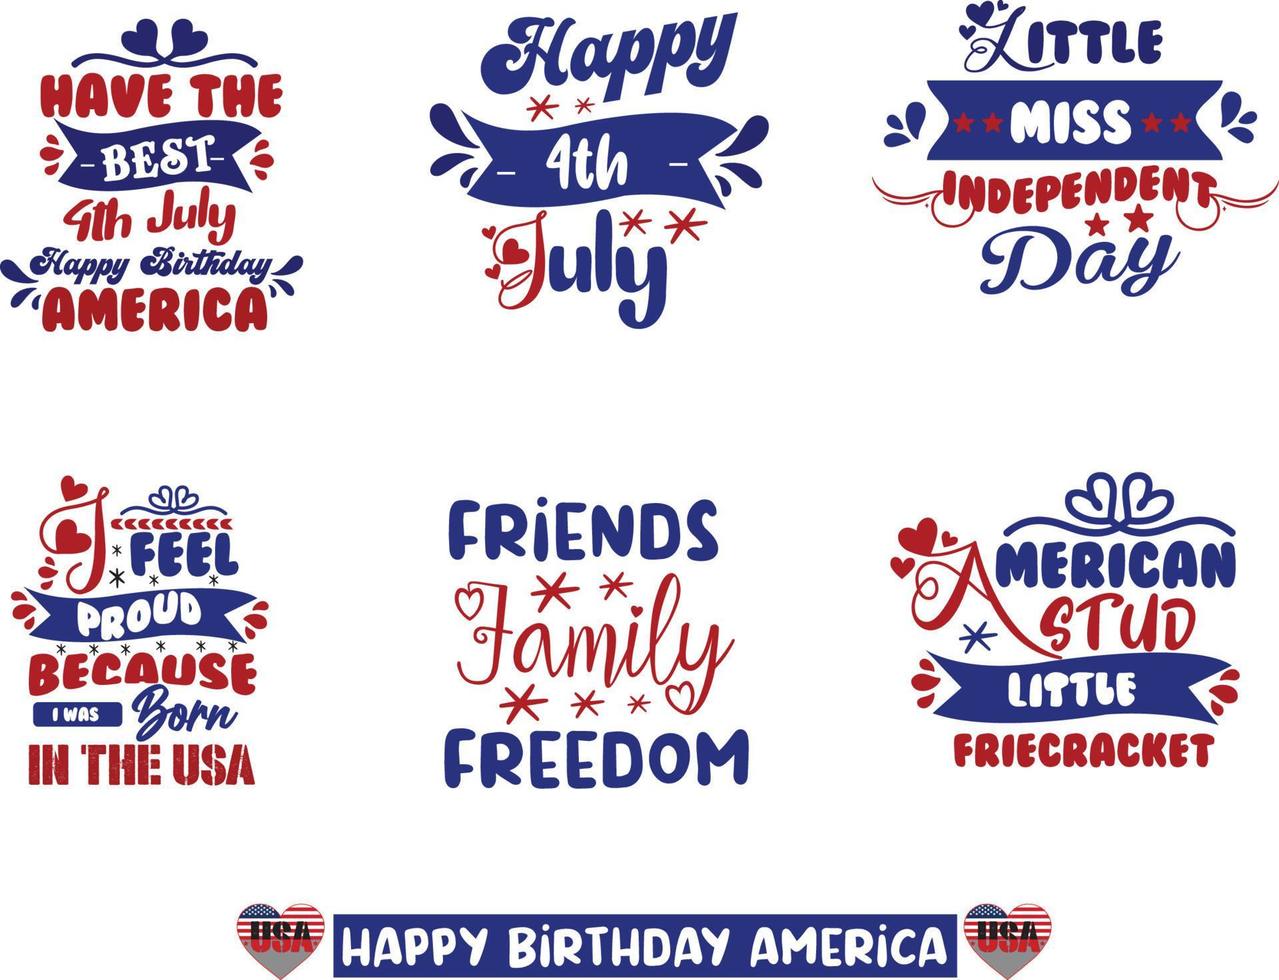 felice 4 luglio, giorno dell'indipendenza usa, america tipografia lettering testo font calligrafia disegno vettoriale vettore libero